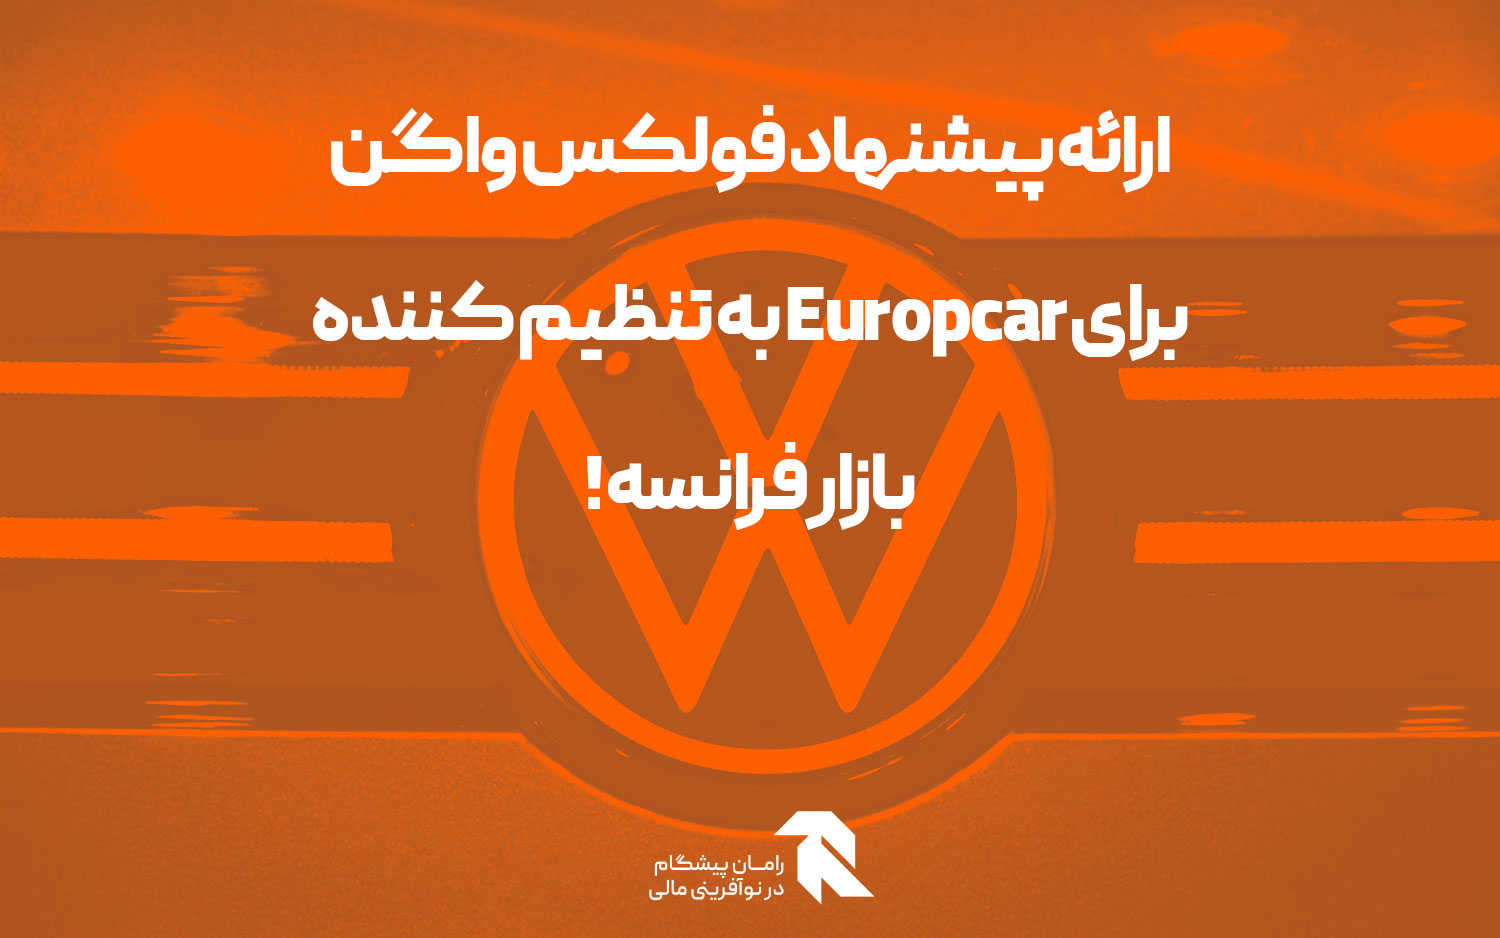 ارائه پیشنهاد فولکس واگن برای Europcar به تنظیم کننده بازار فرانسه!